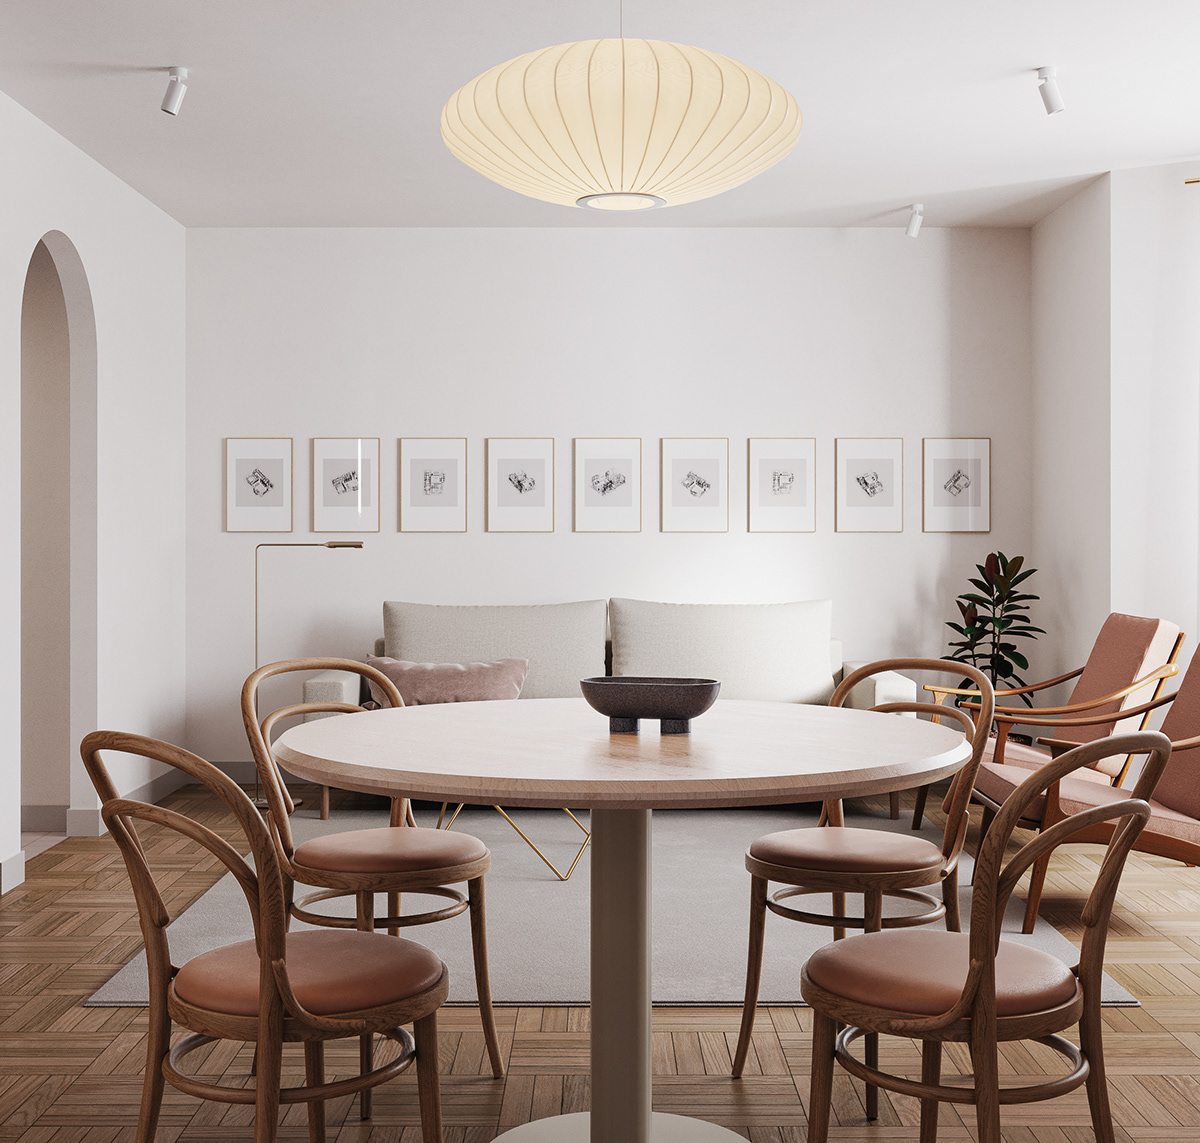 architecture furniture Interior interiordesign residential